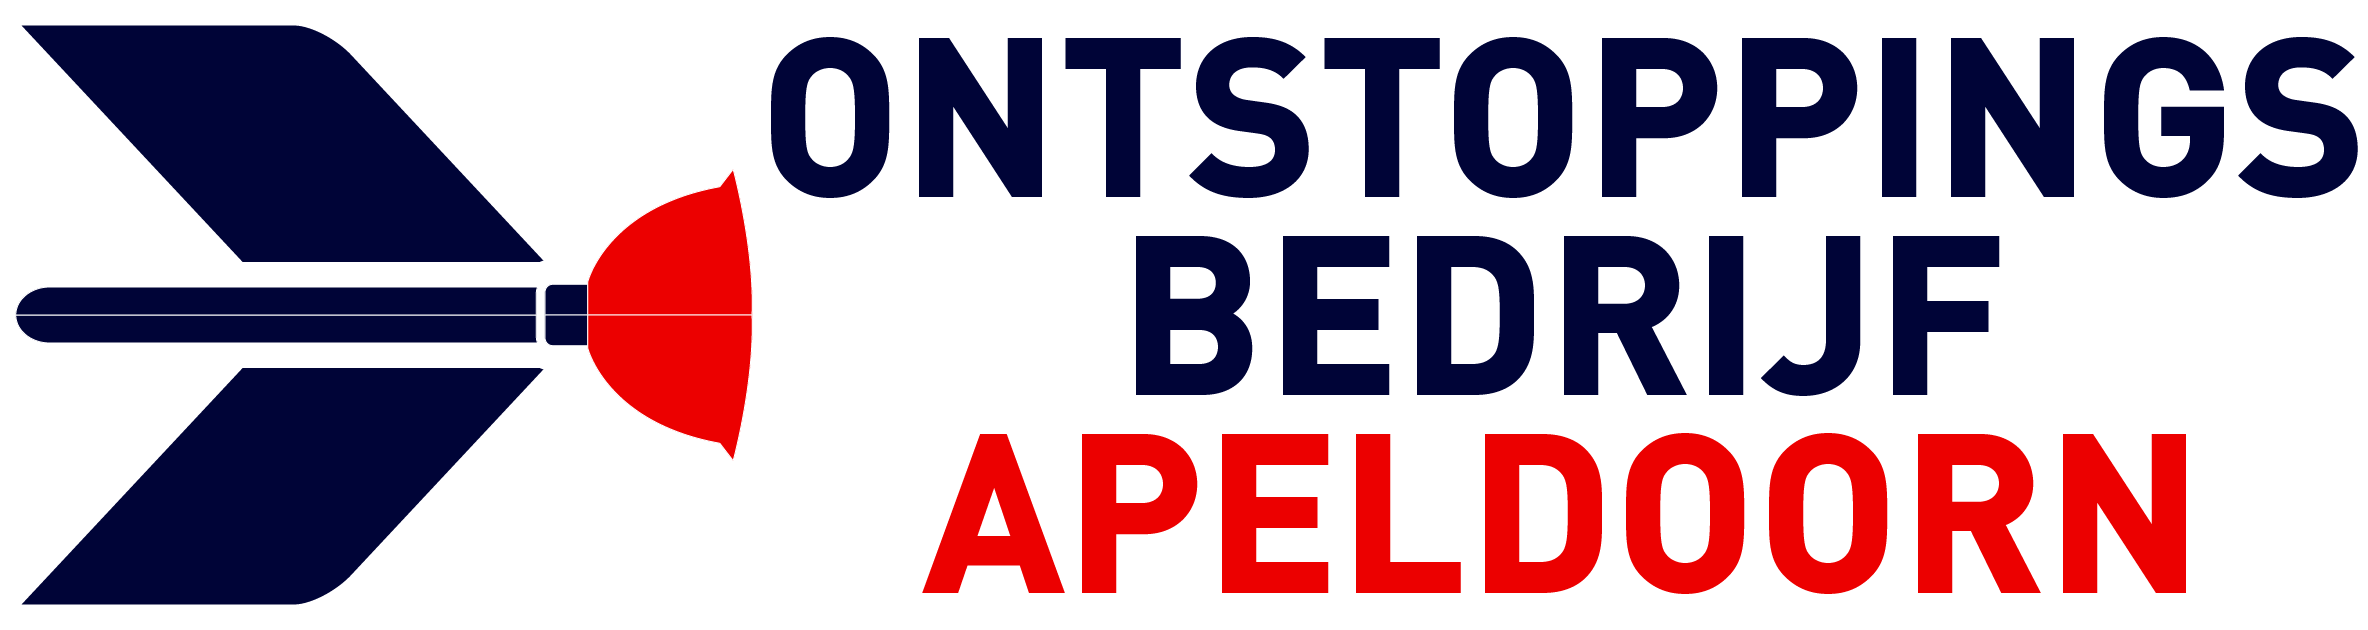 Ontstoppingsbedrijf Apeldoorn logo